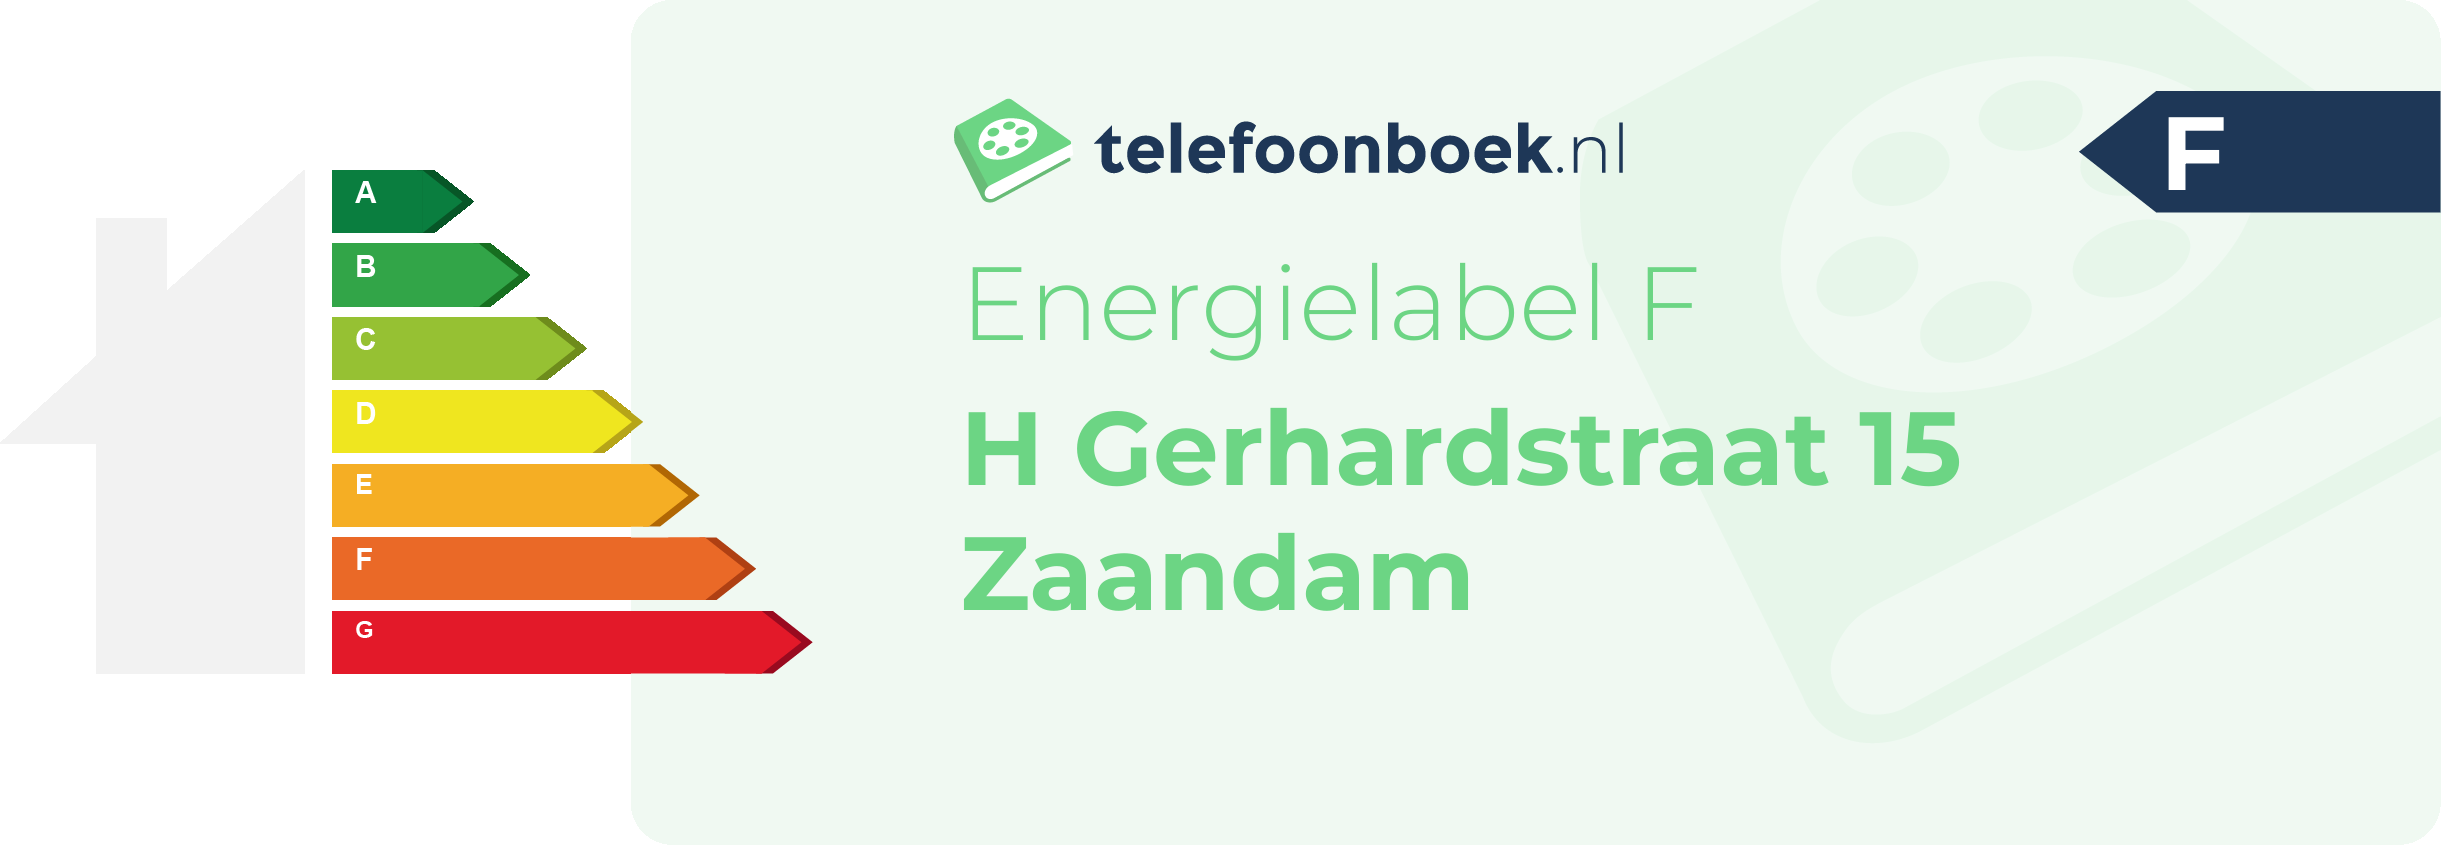 Energielabel H Gerhardstraat 15 Zaandam